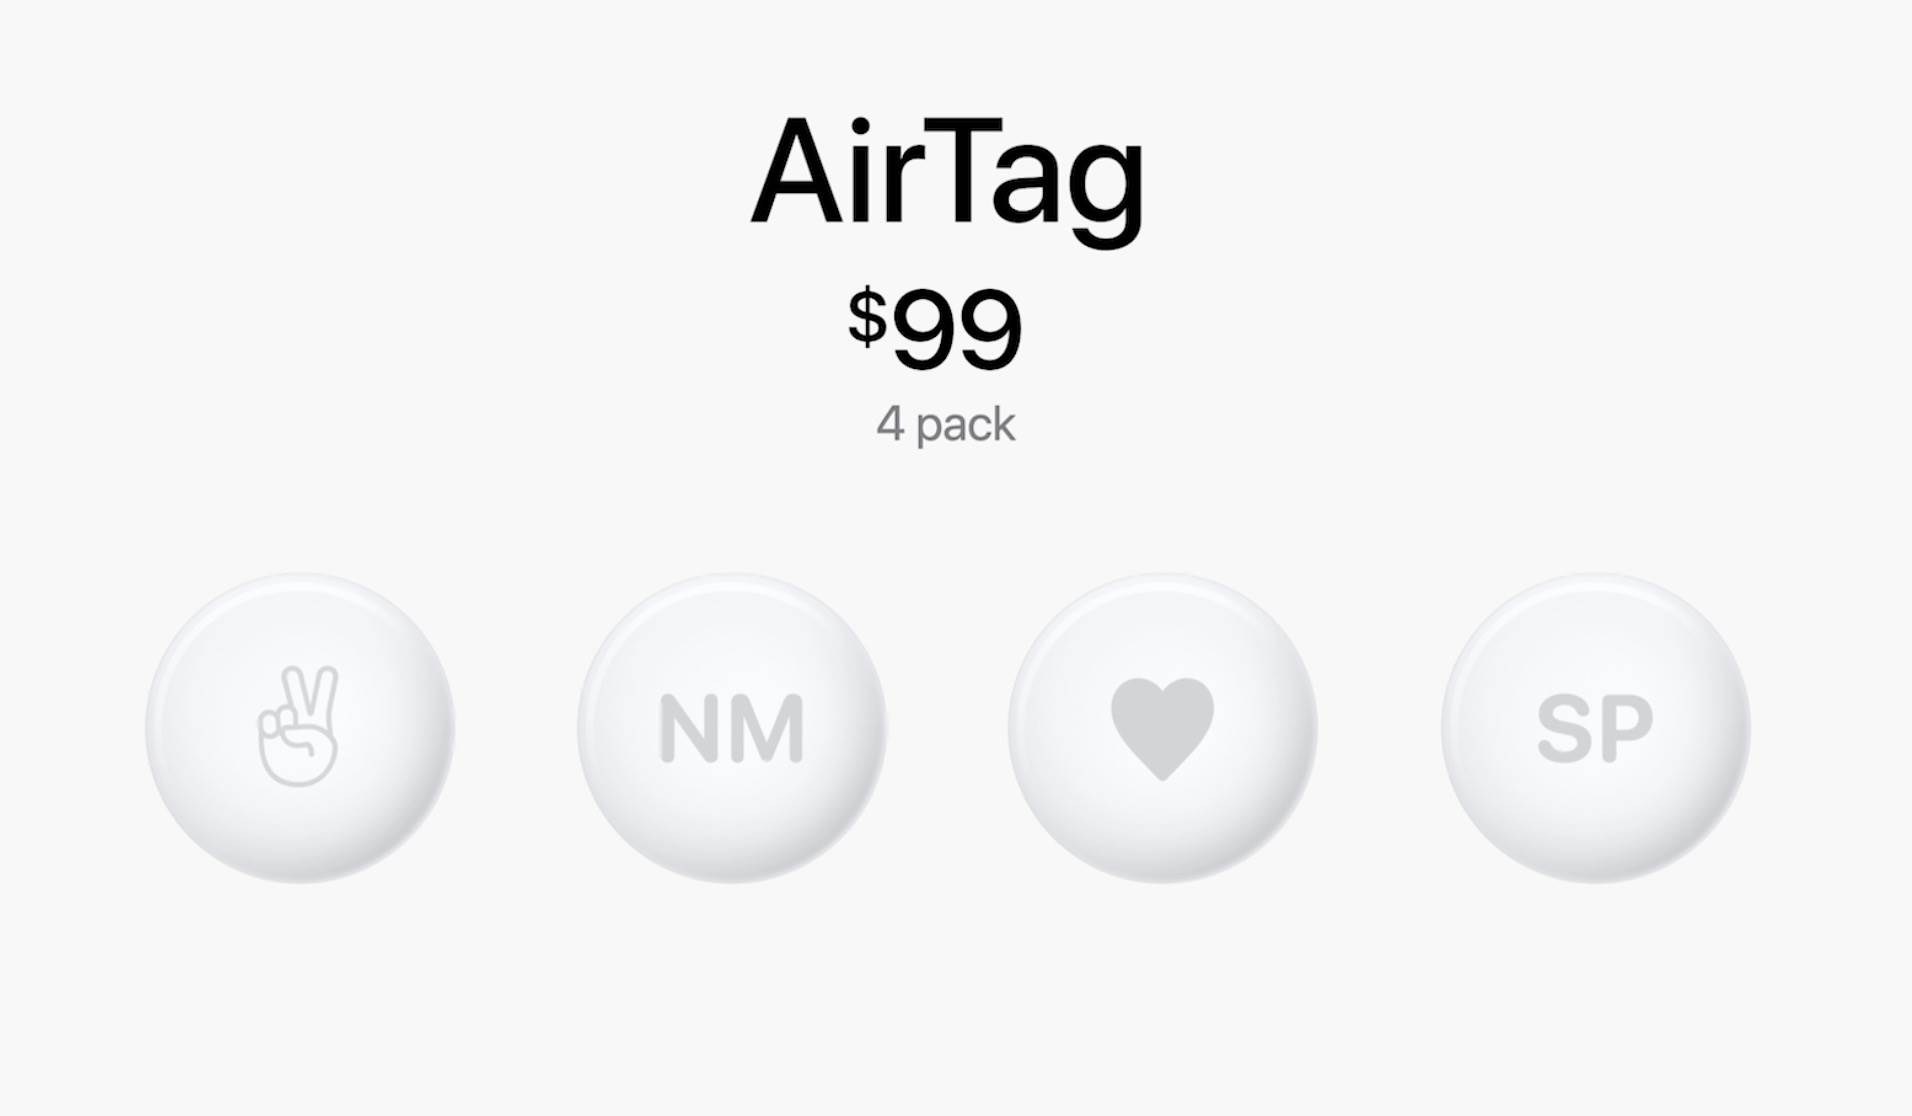 Lokalizator Apple AirTag oficjalnie zaprezentowany polecane, ciekawostki Specyfikacja, lokalizator Apple, lokalizator AirTag, jak działa AirTag, funkcje, cena AirTag w polsce, cena AirTag, cena, AirTag  Po prawie dwóch latach oczekiwania firma Apple oficjalnie zaprezentowała dziś lokalizator AirTag. Co to takiego i jak działa? Już wyjaśniamy! cena AirTag